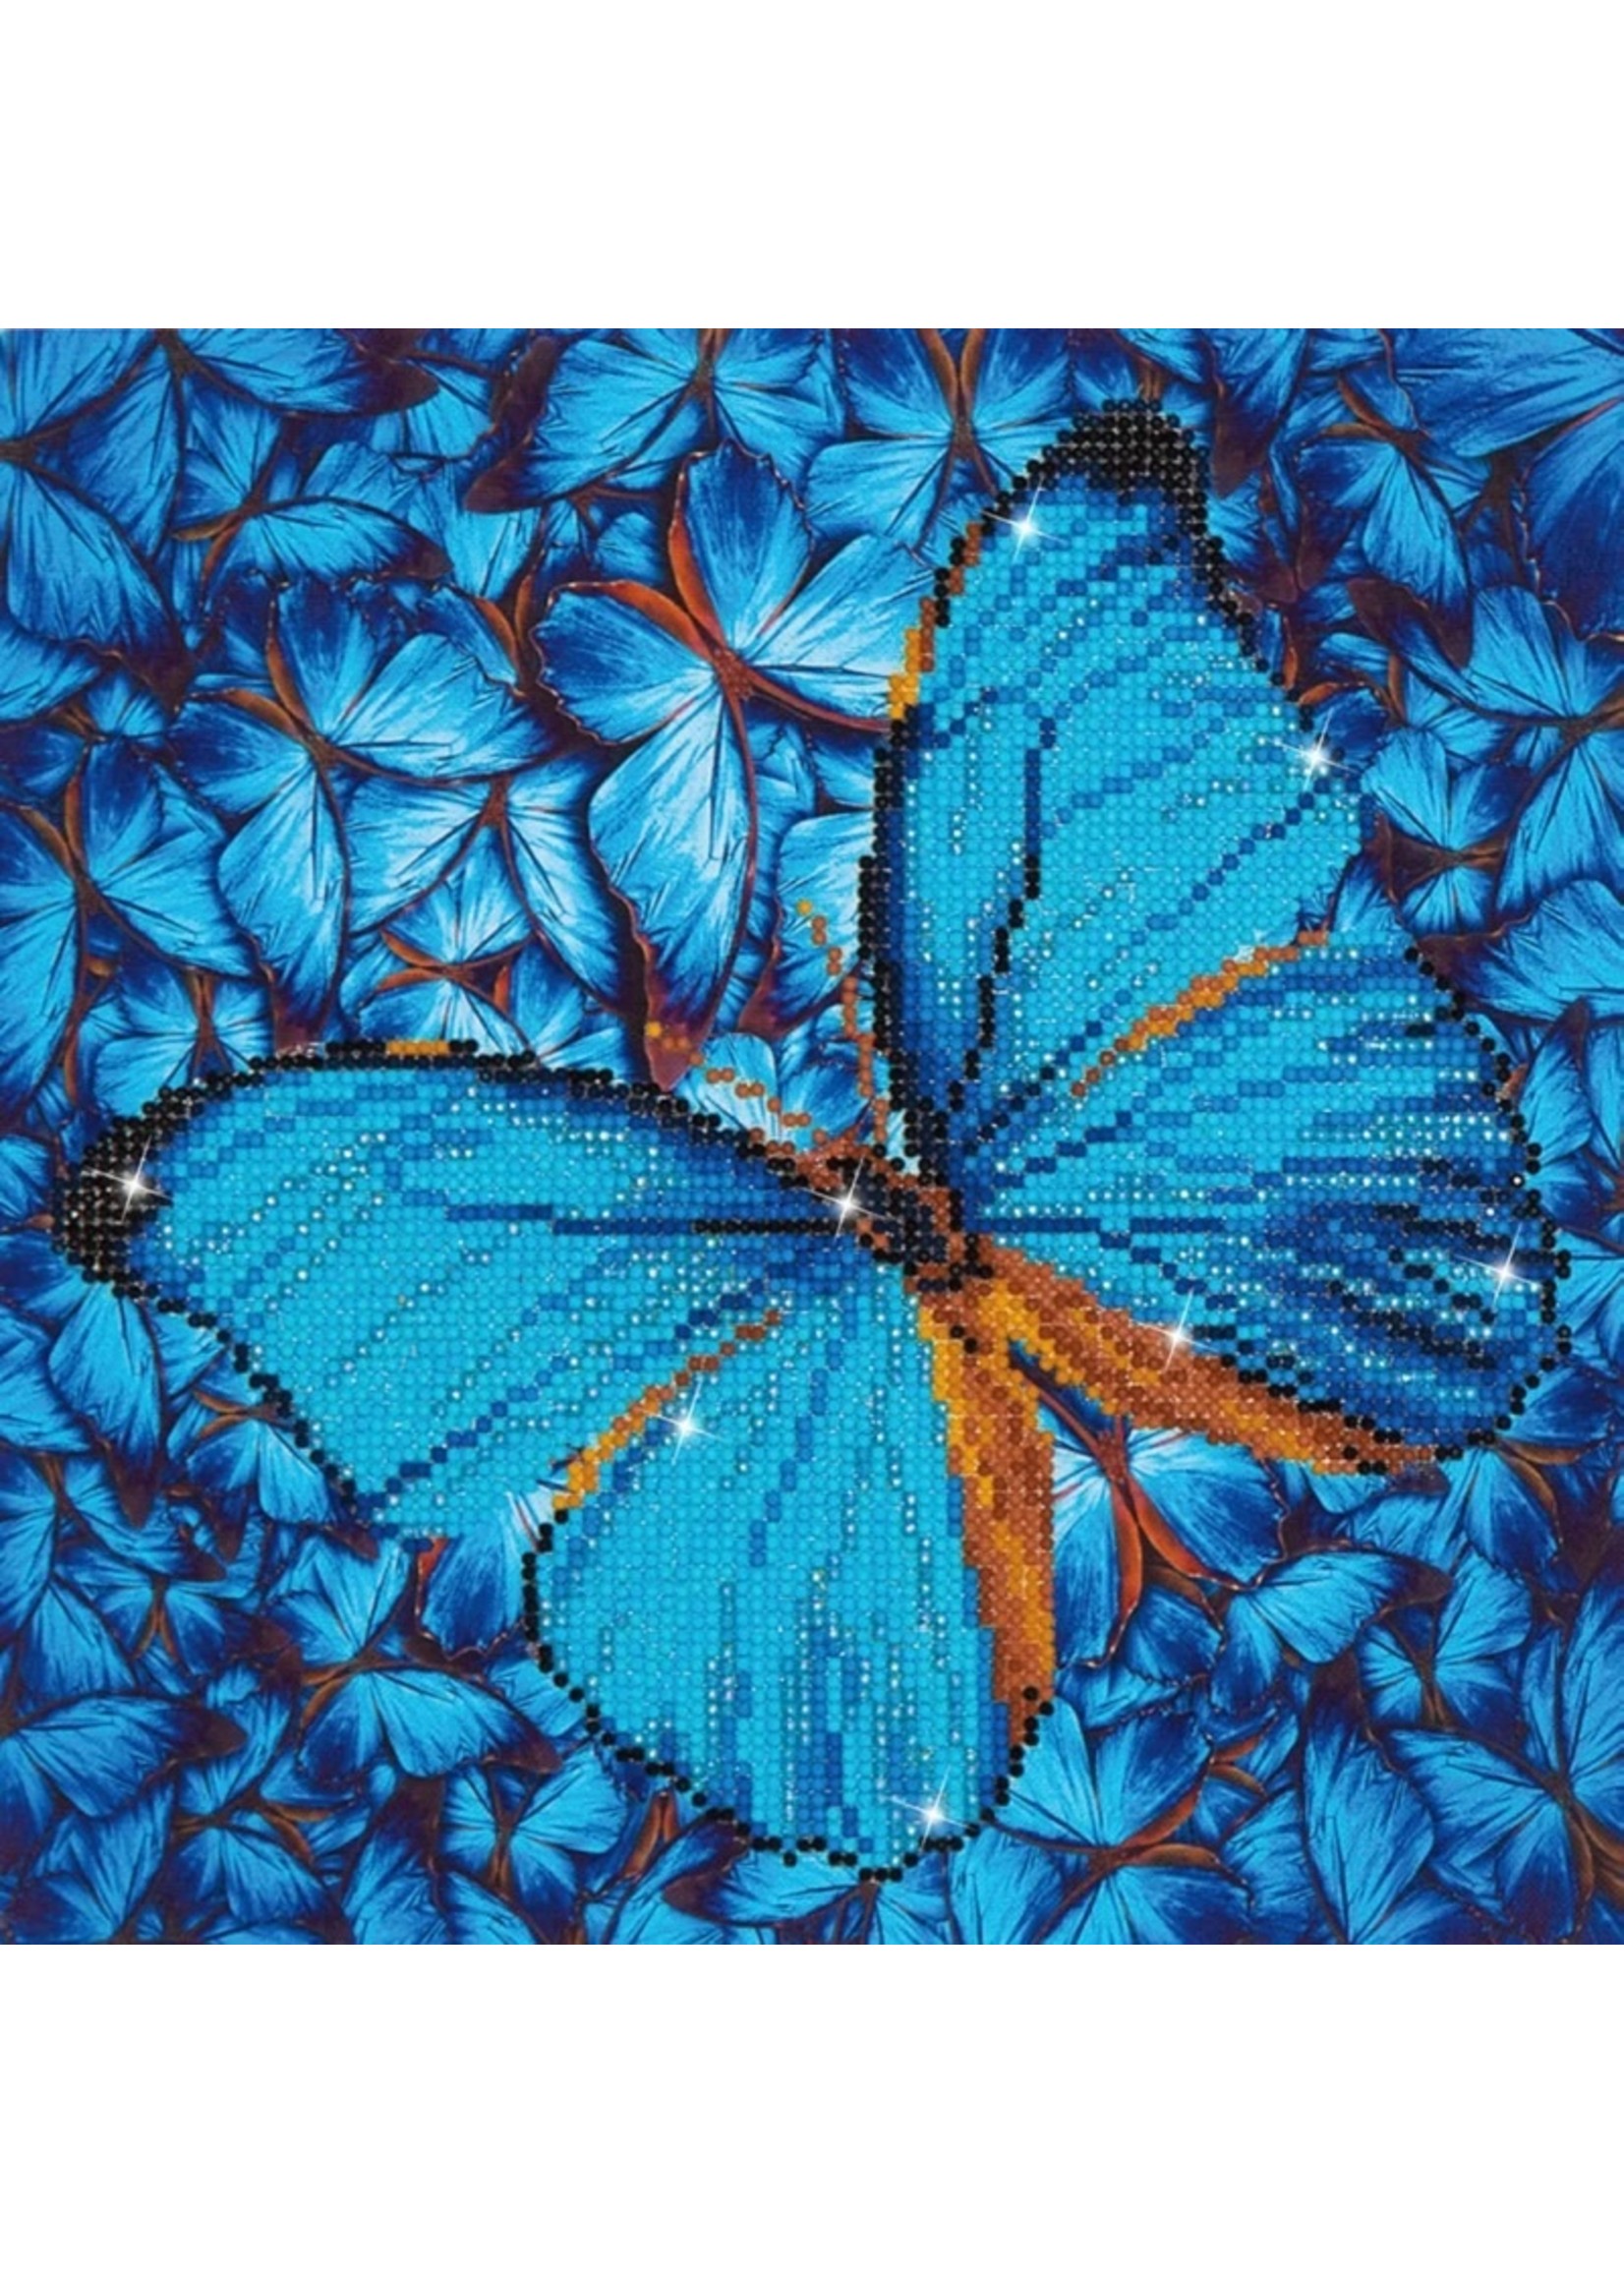 Diamond Dotz Flutter By Blue - Facet Art Kit